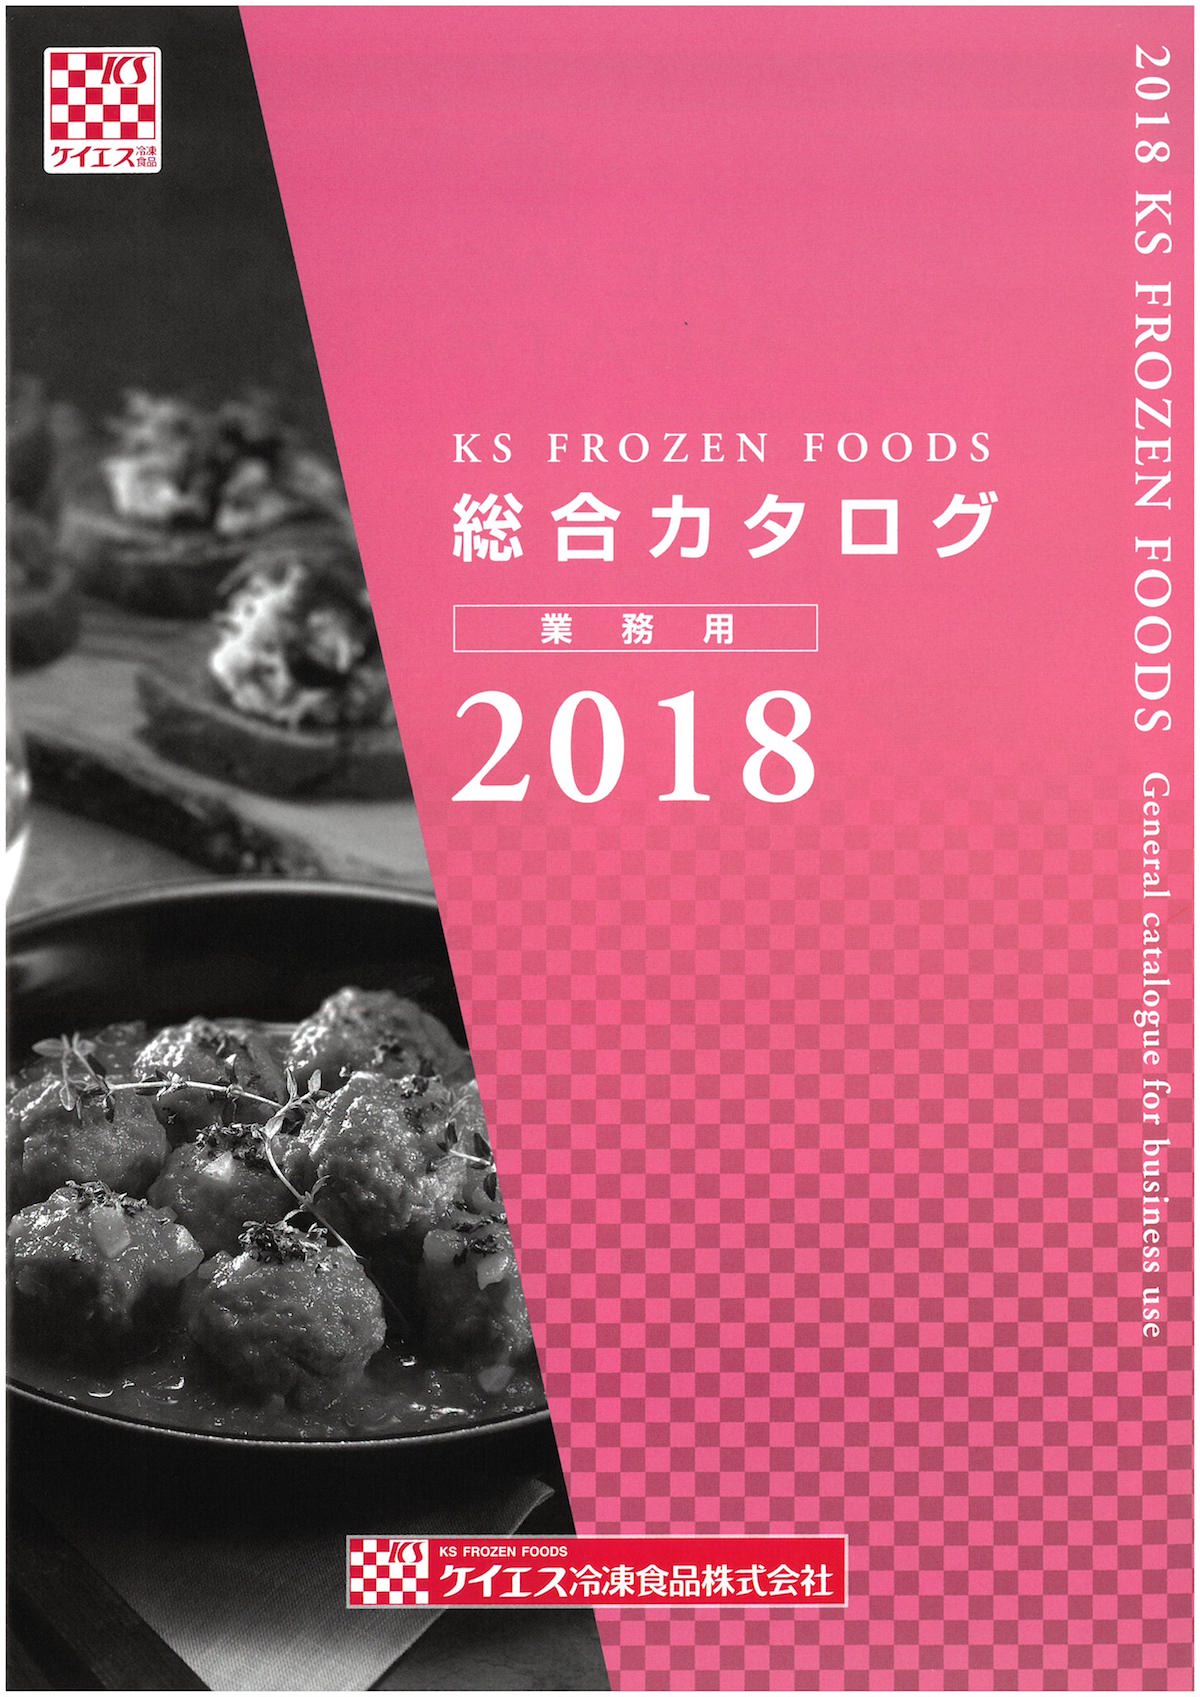 ケイエス冷凍食品 業務用総合カタログ2018 | 冷凍食品カタログ.com